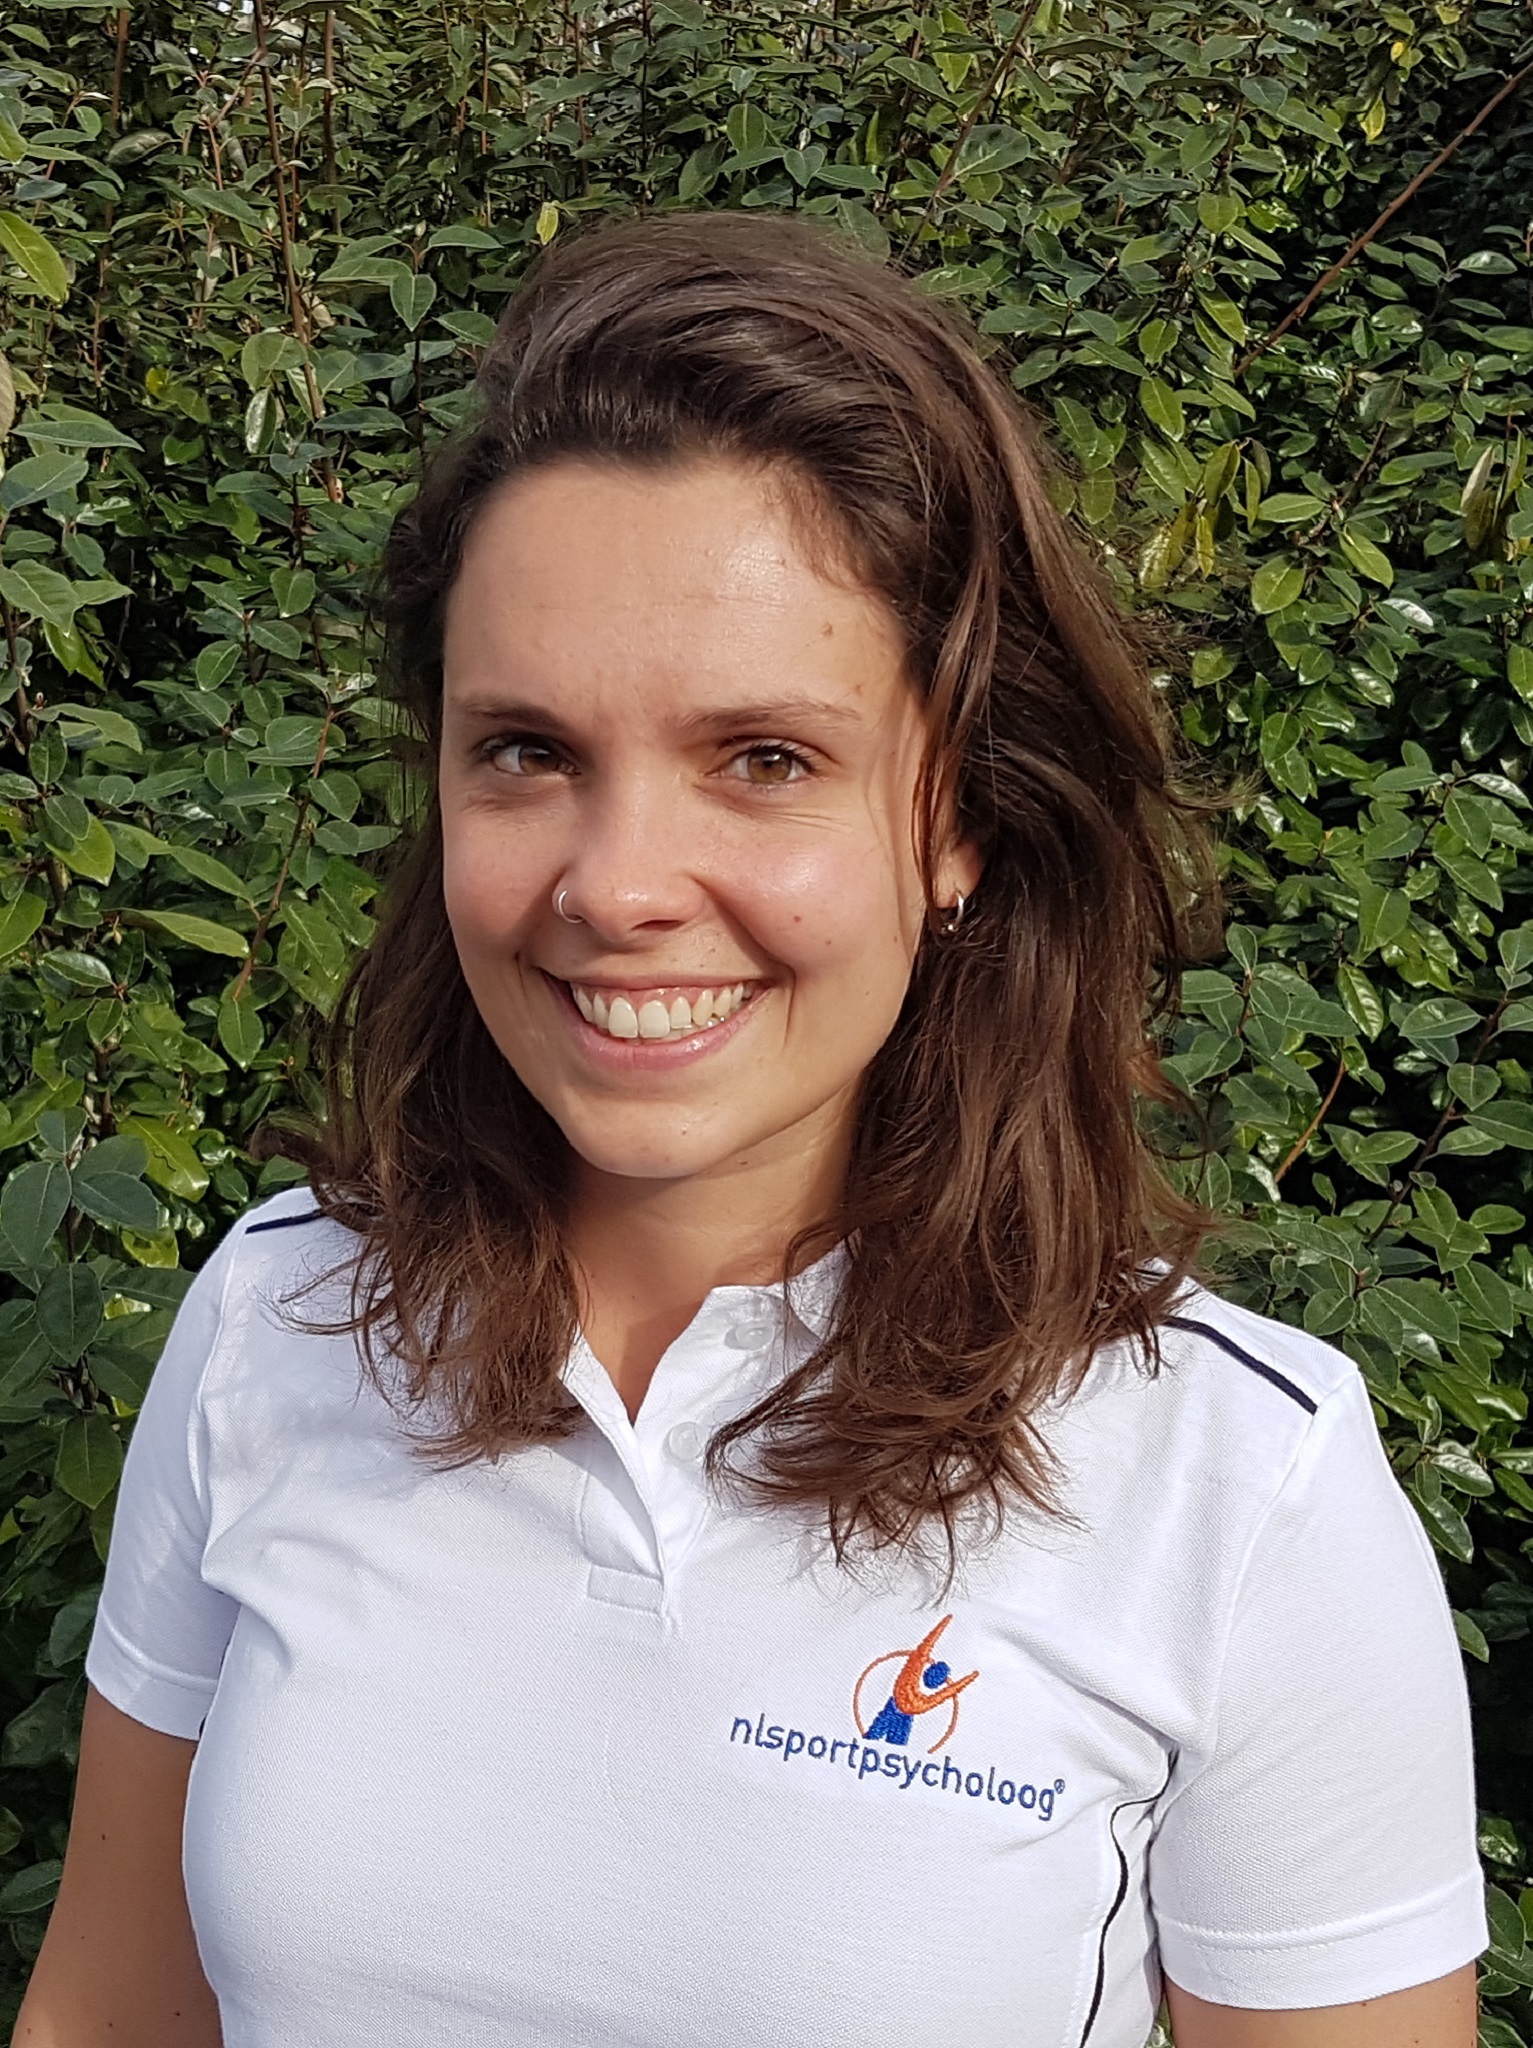 NL sportpsycholoog Katja Cardol – Hillegom